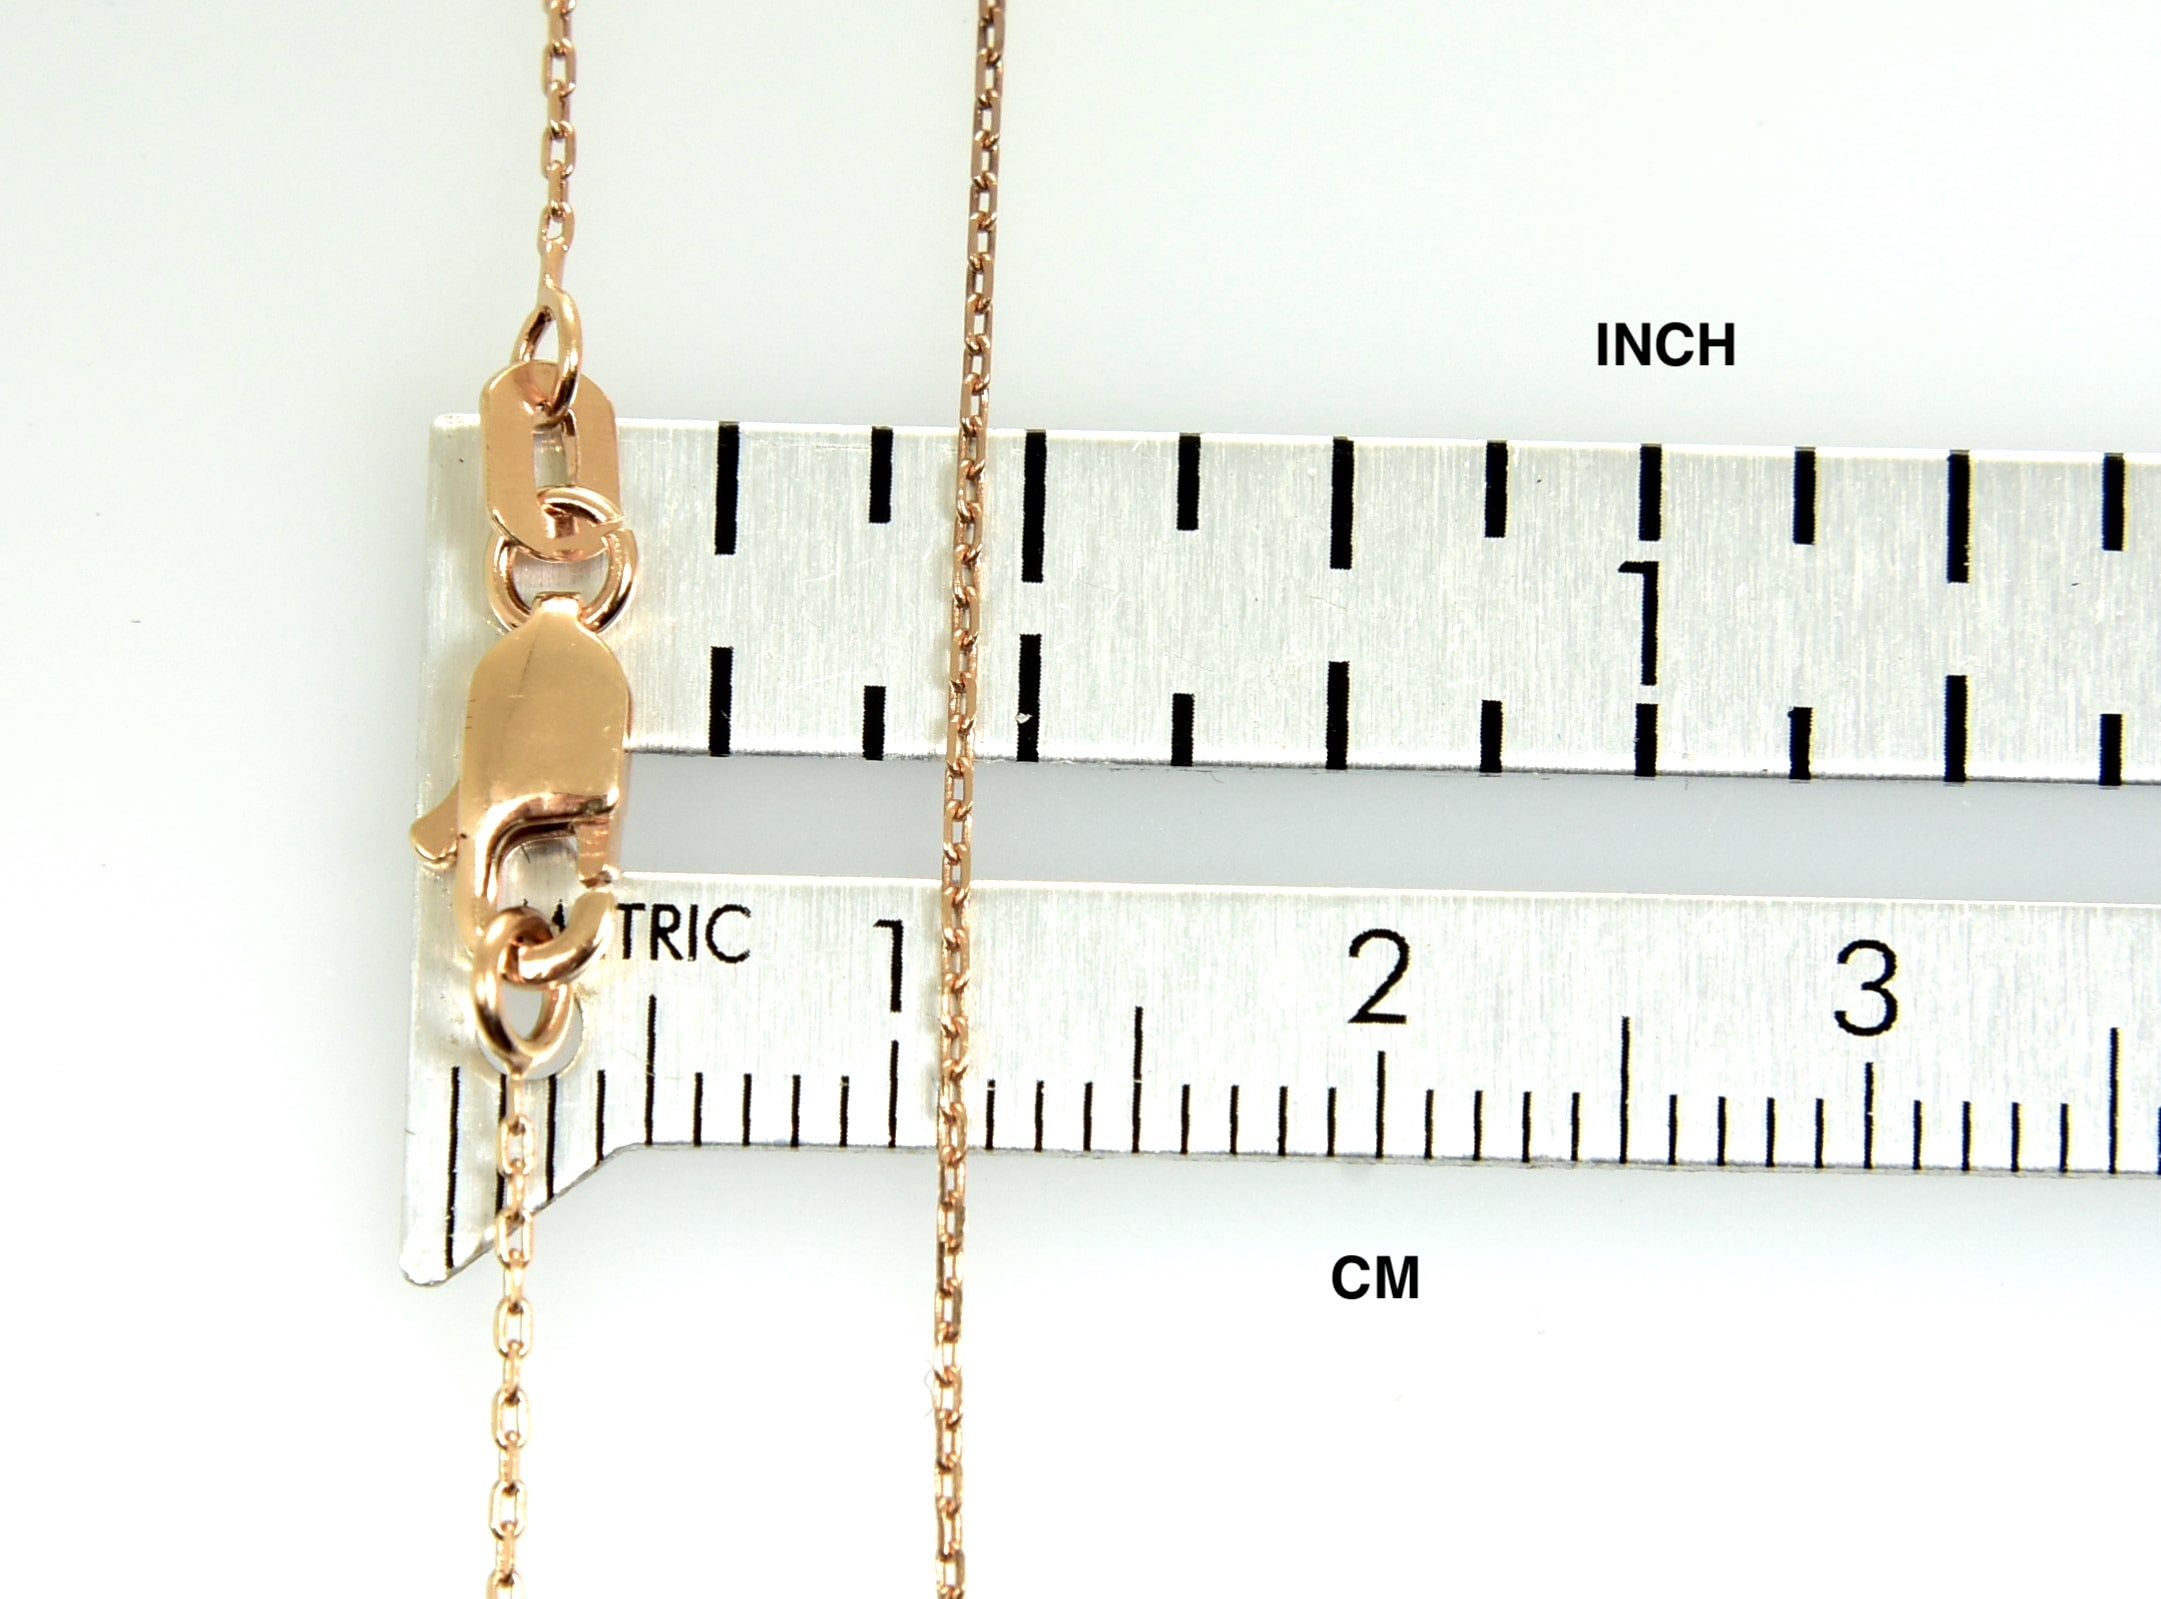 14K Rose Gold 0.8mm Diamond Cut Cable Bracelet Anklet Choker Necklace Pendant Chain